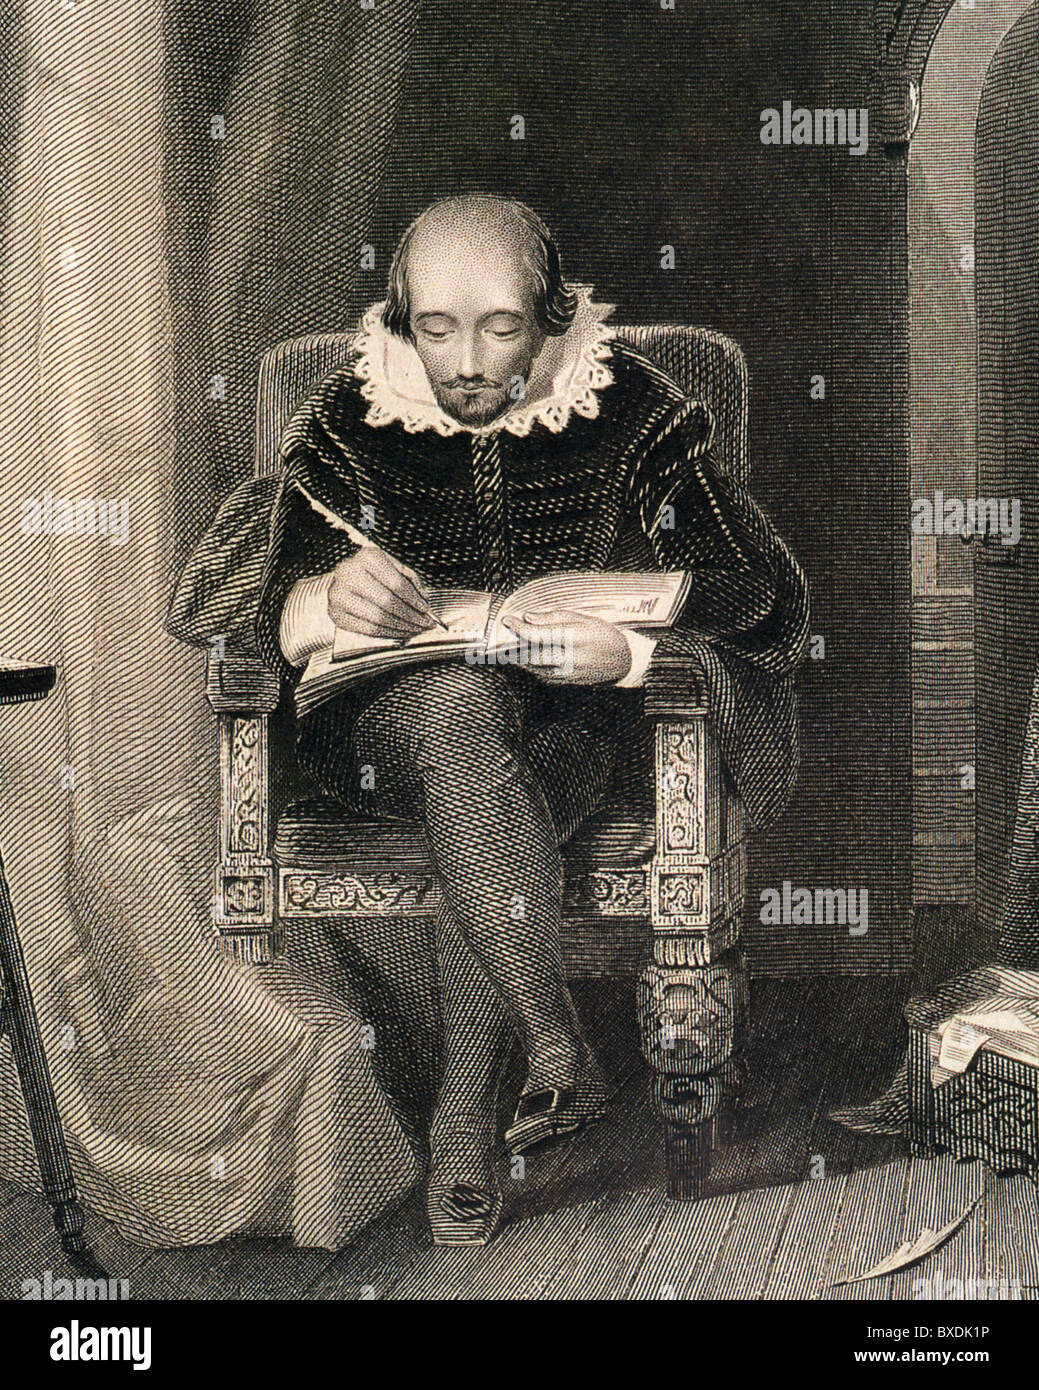 WILLIAM SHAKESPEARE dans une gravure du xixe siècle Banque D'Images